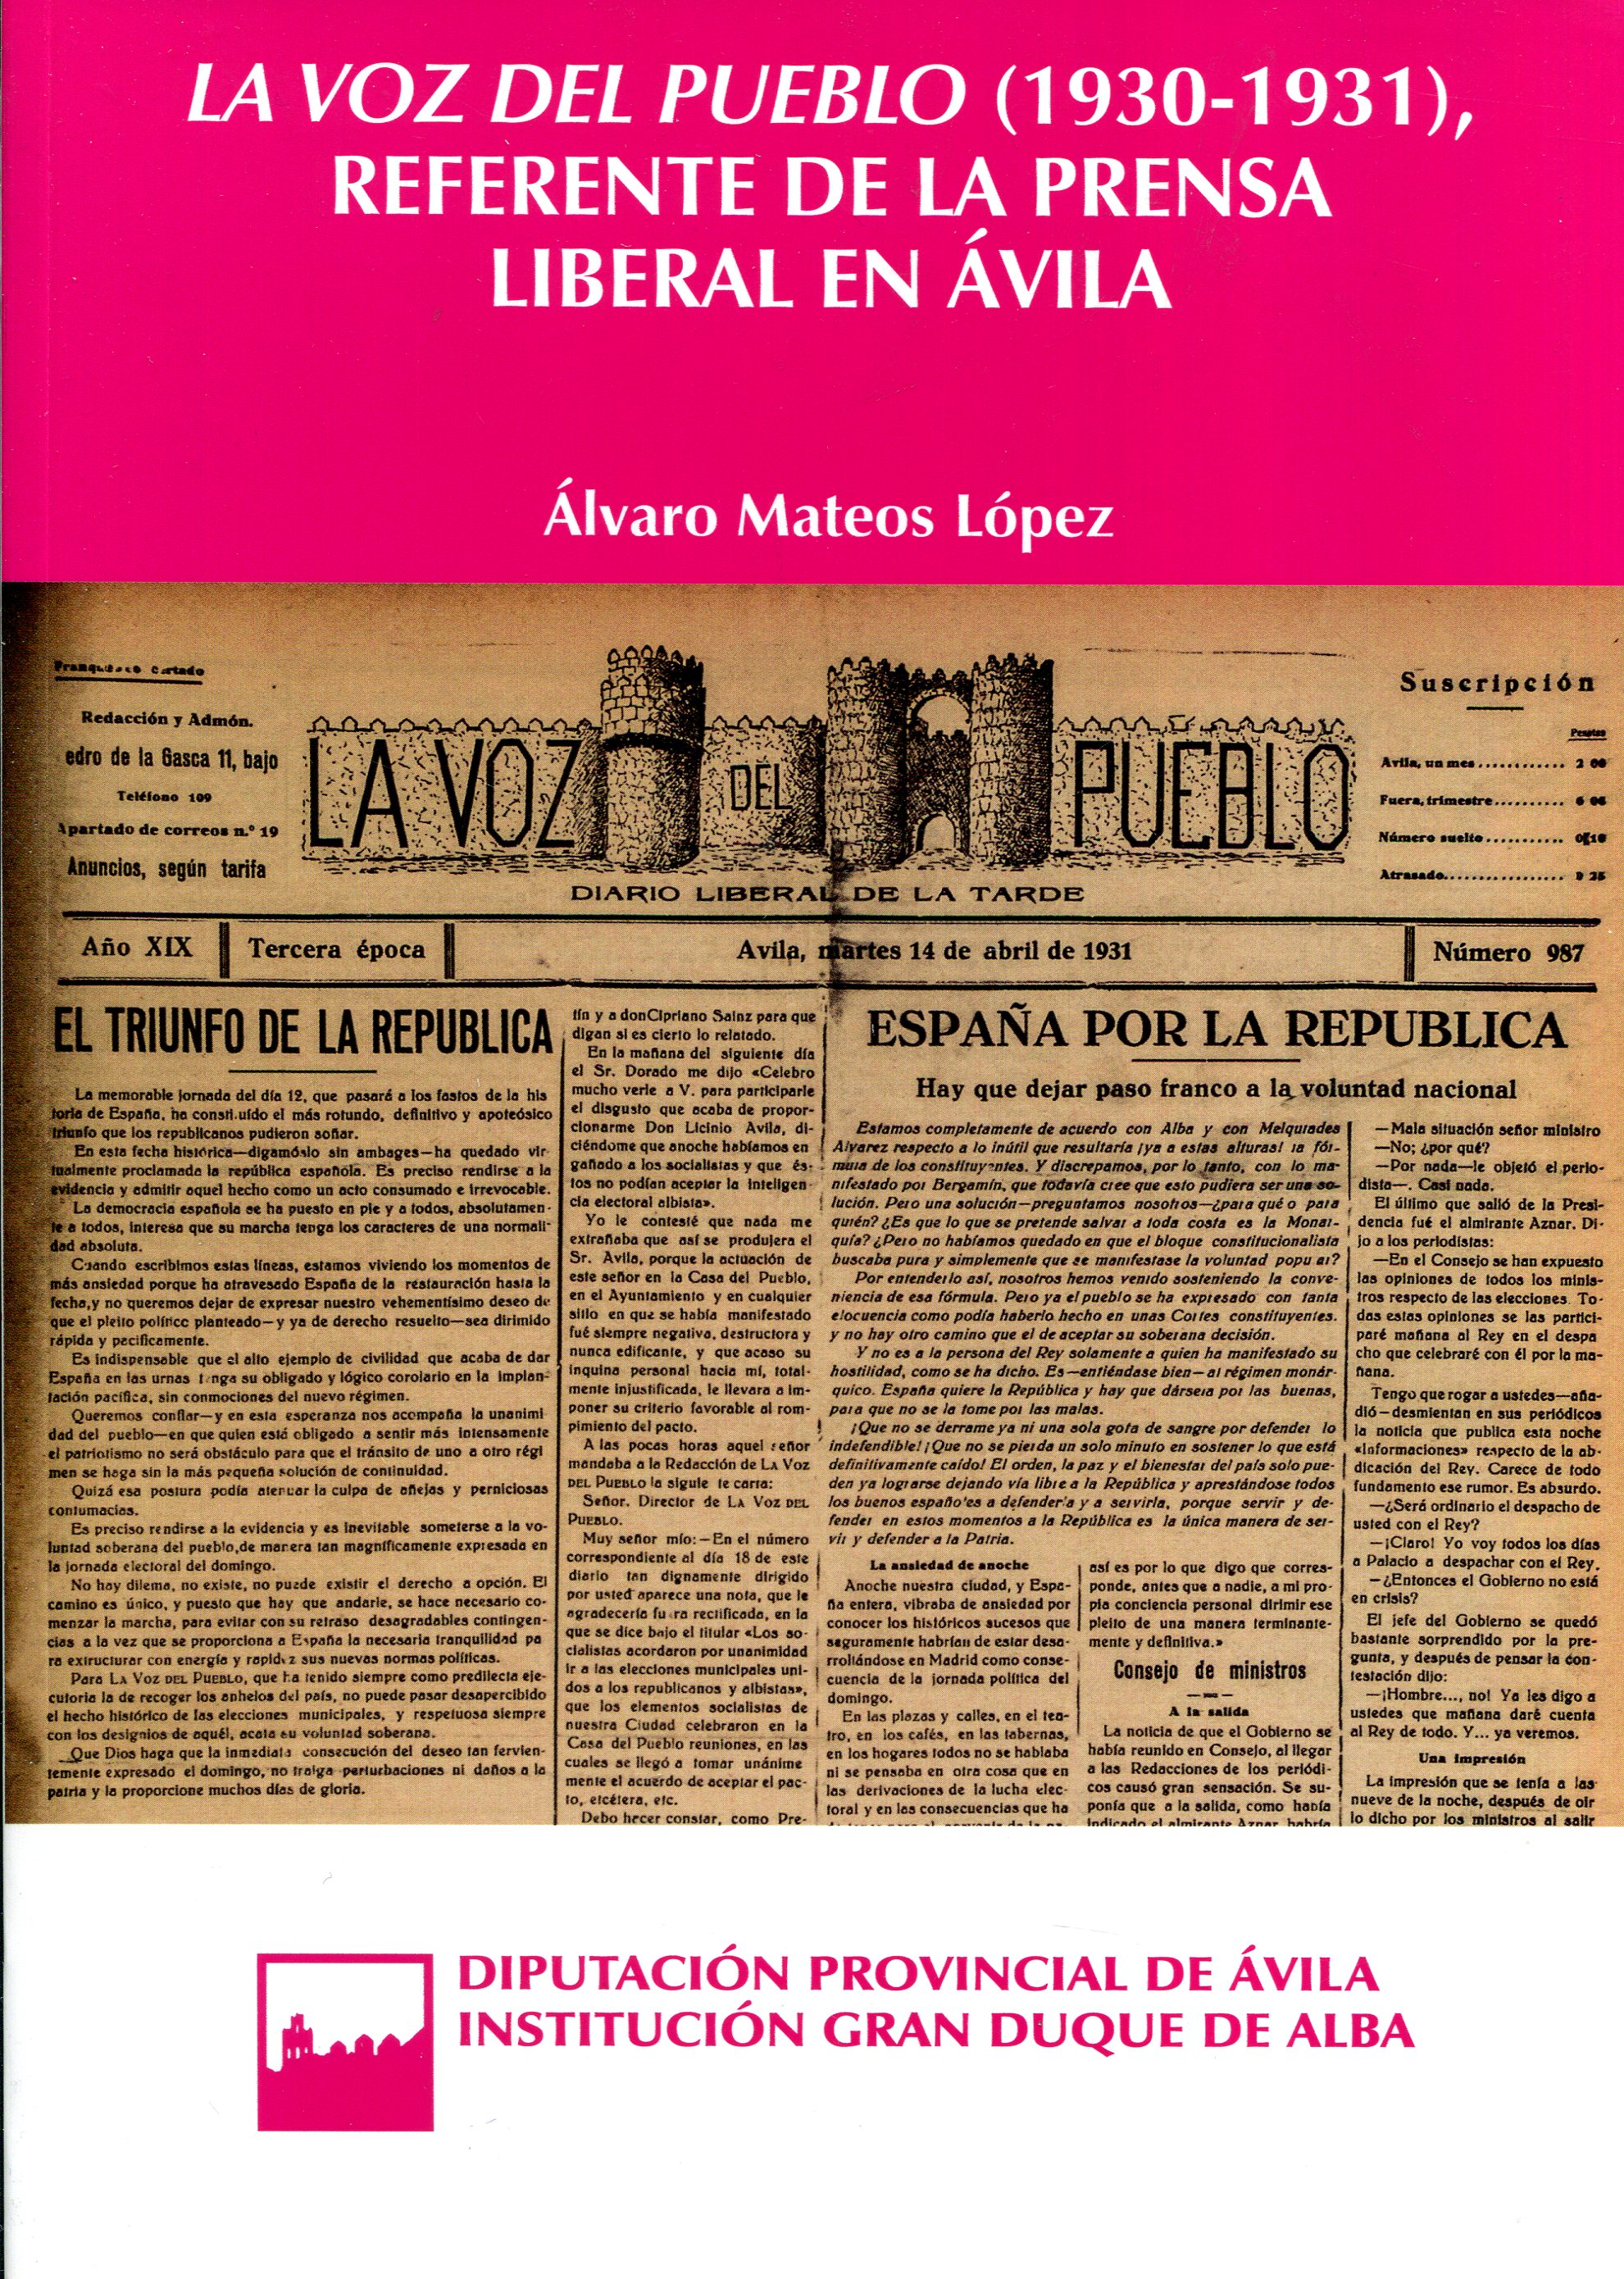 La Voz del Pueblo (1930-1931), referente de la prensa liberal en Ávila